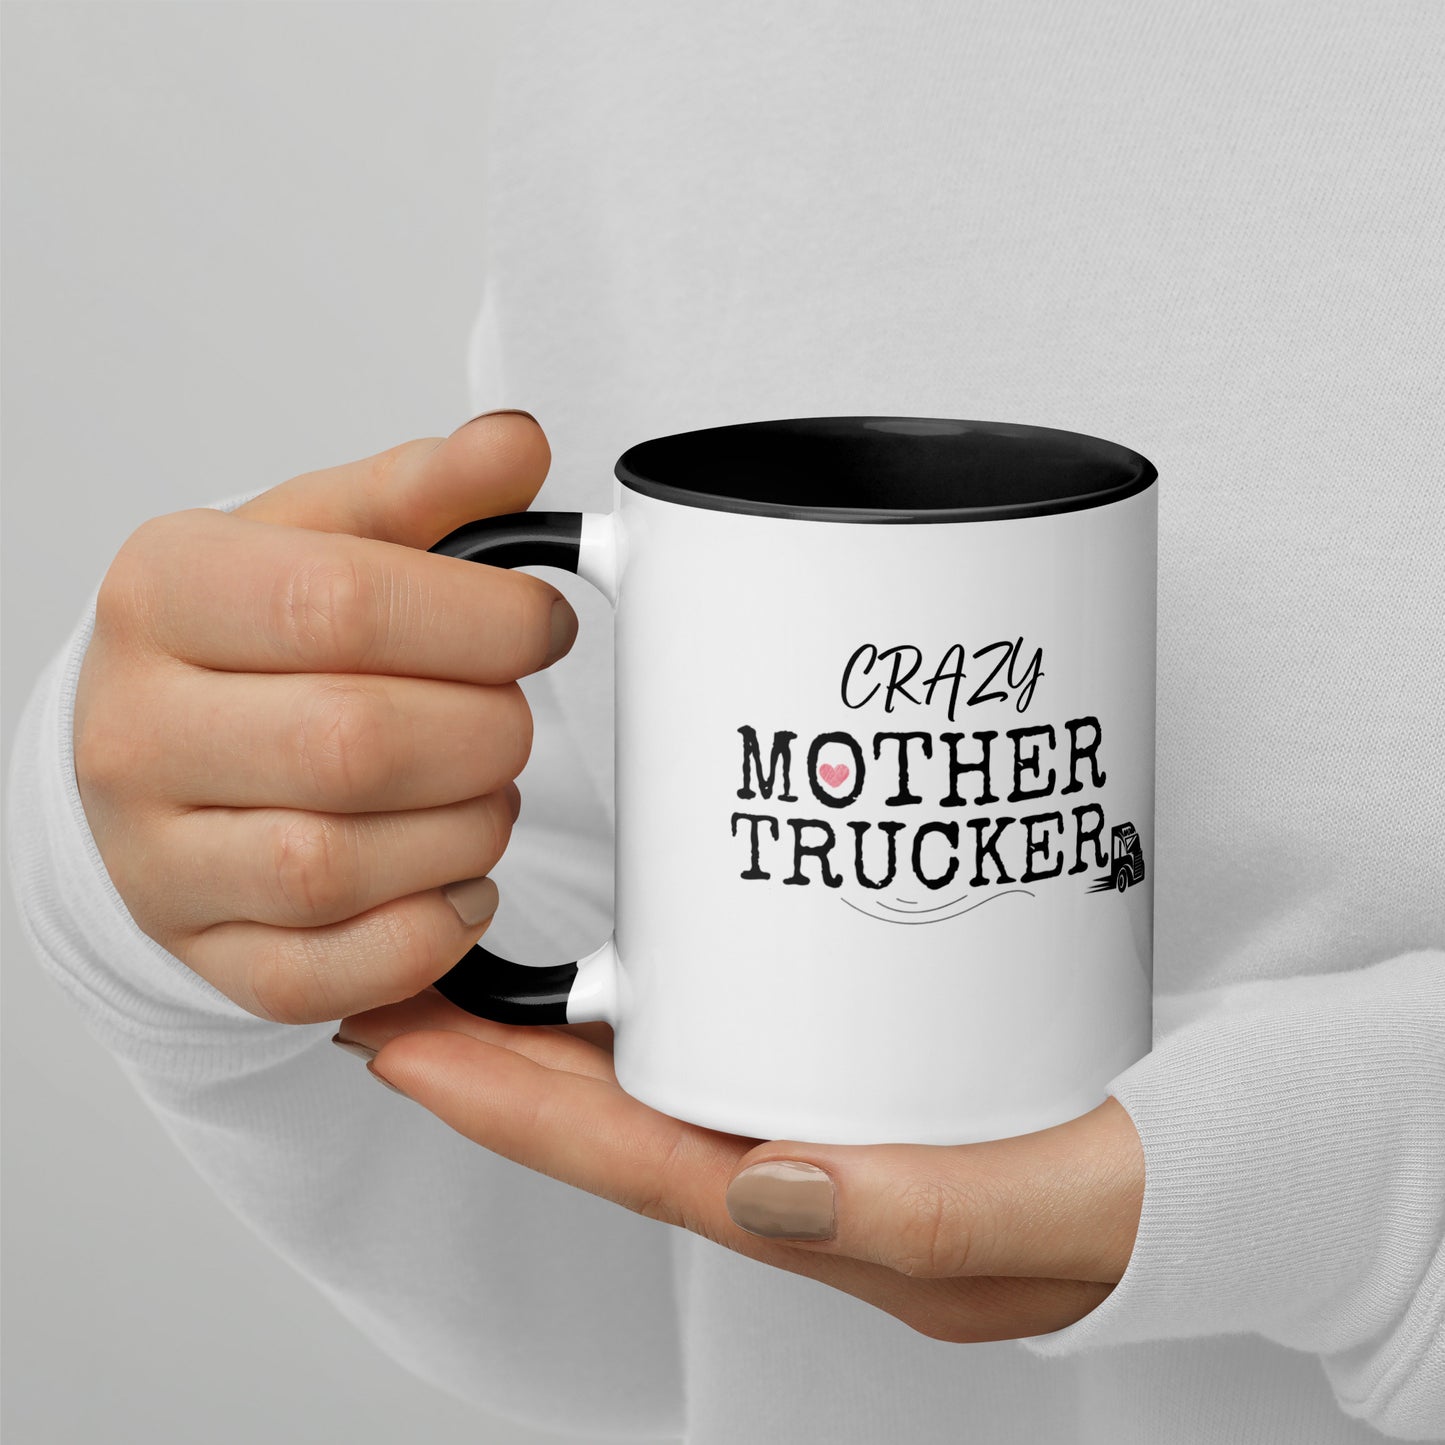 Crazy Mother Trucker Premium  11oz Ceramic Mug - On the Go with Princess O